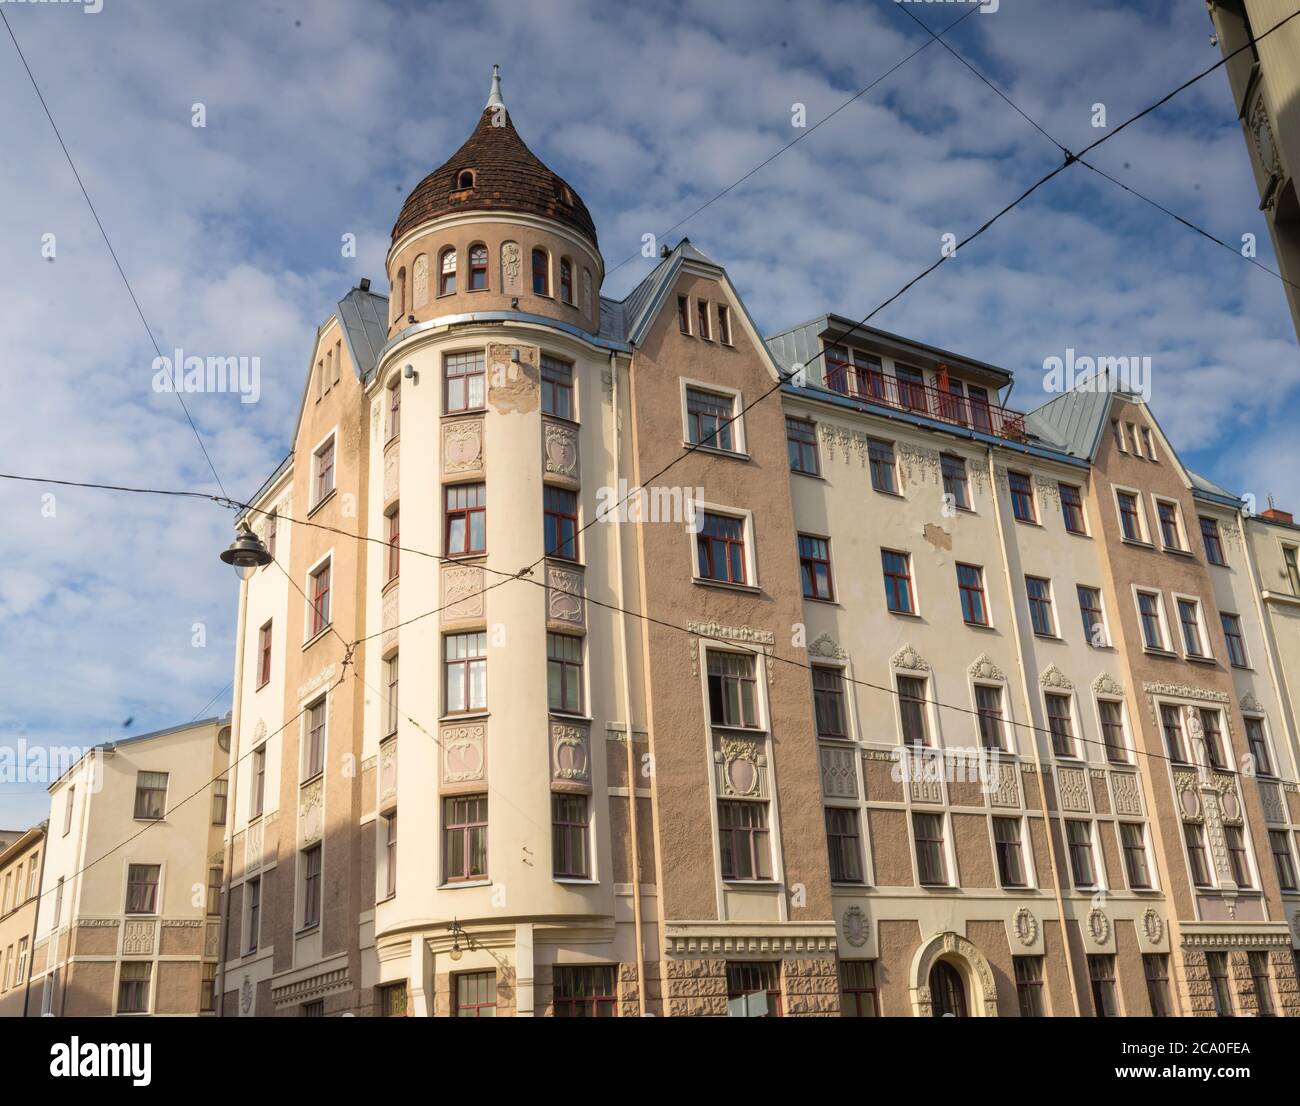 Distrito de Jugendstil, Riga, capital de Letonia y la ciudad más grande de los Estados bálticos. Fundada en 1209, su casco antiguo es un lugar declarado Patrimonio de la Humanidad por la UNESCO. Foto de stock